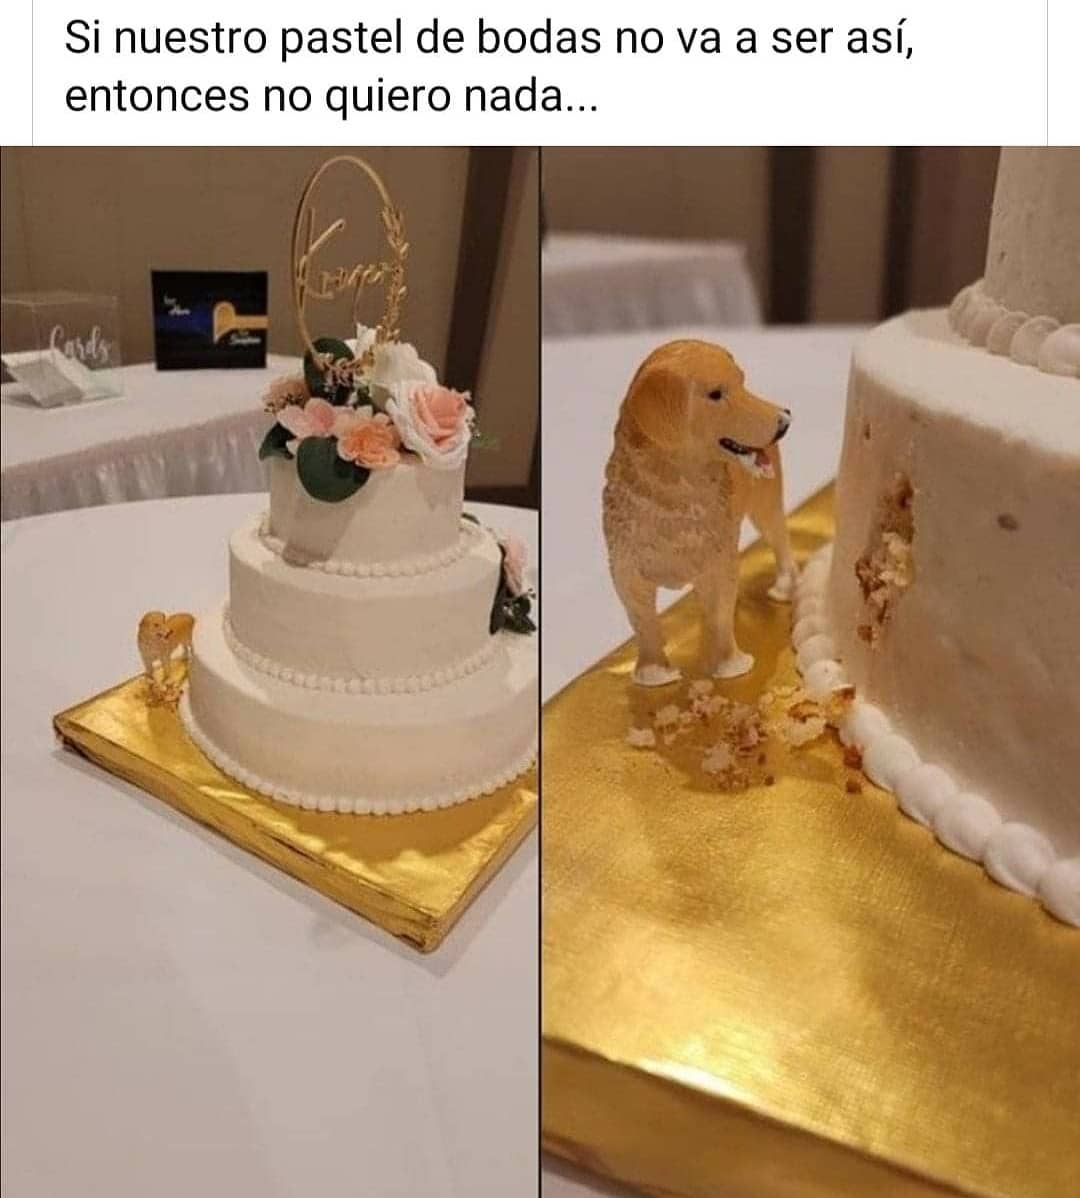 Si nuestro pastel de bodas no va a ser así, entonces no quiero nada...